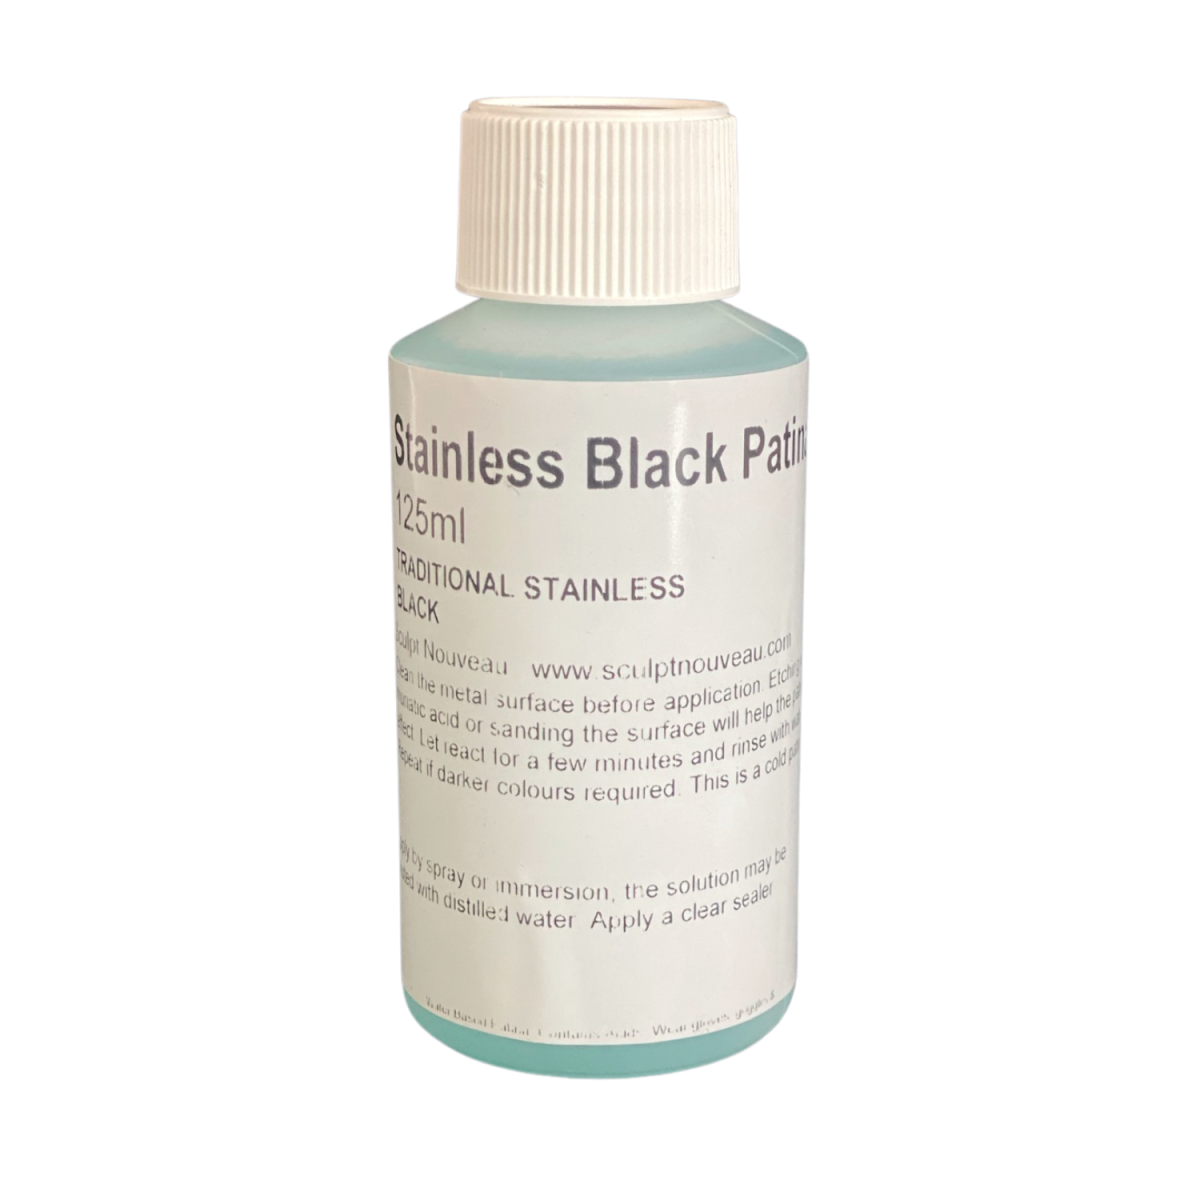 Stainless Black Patina